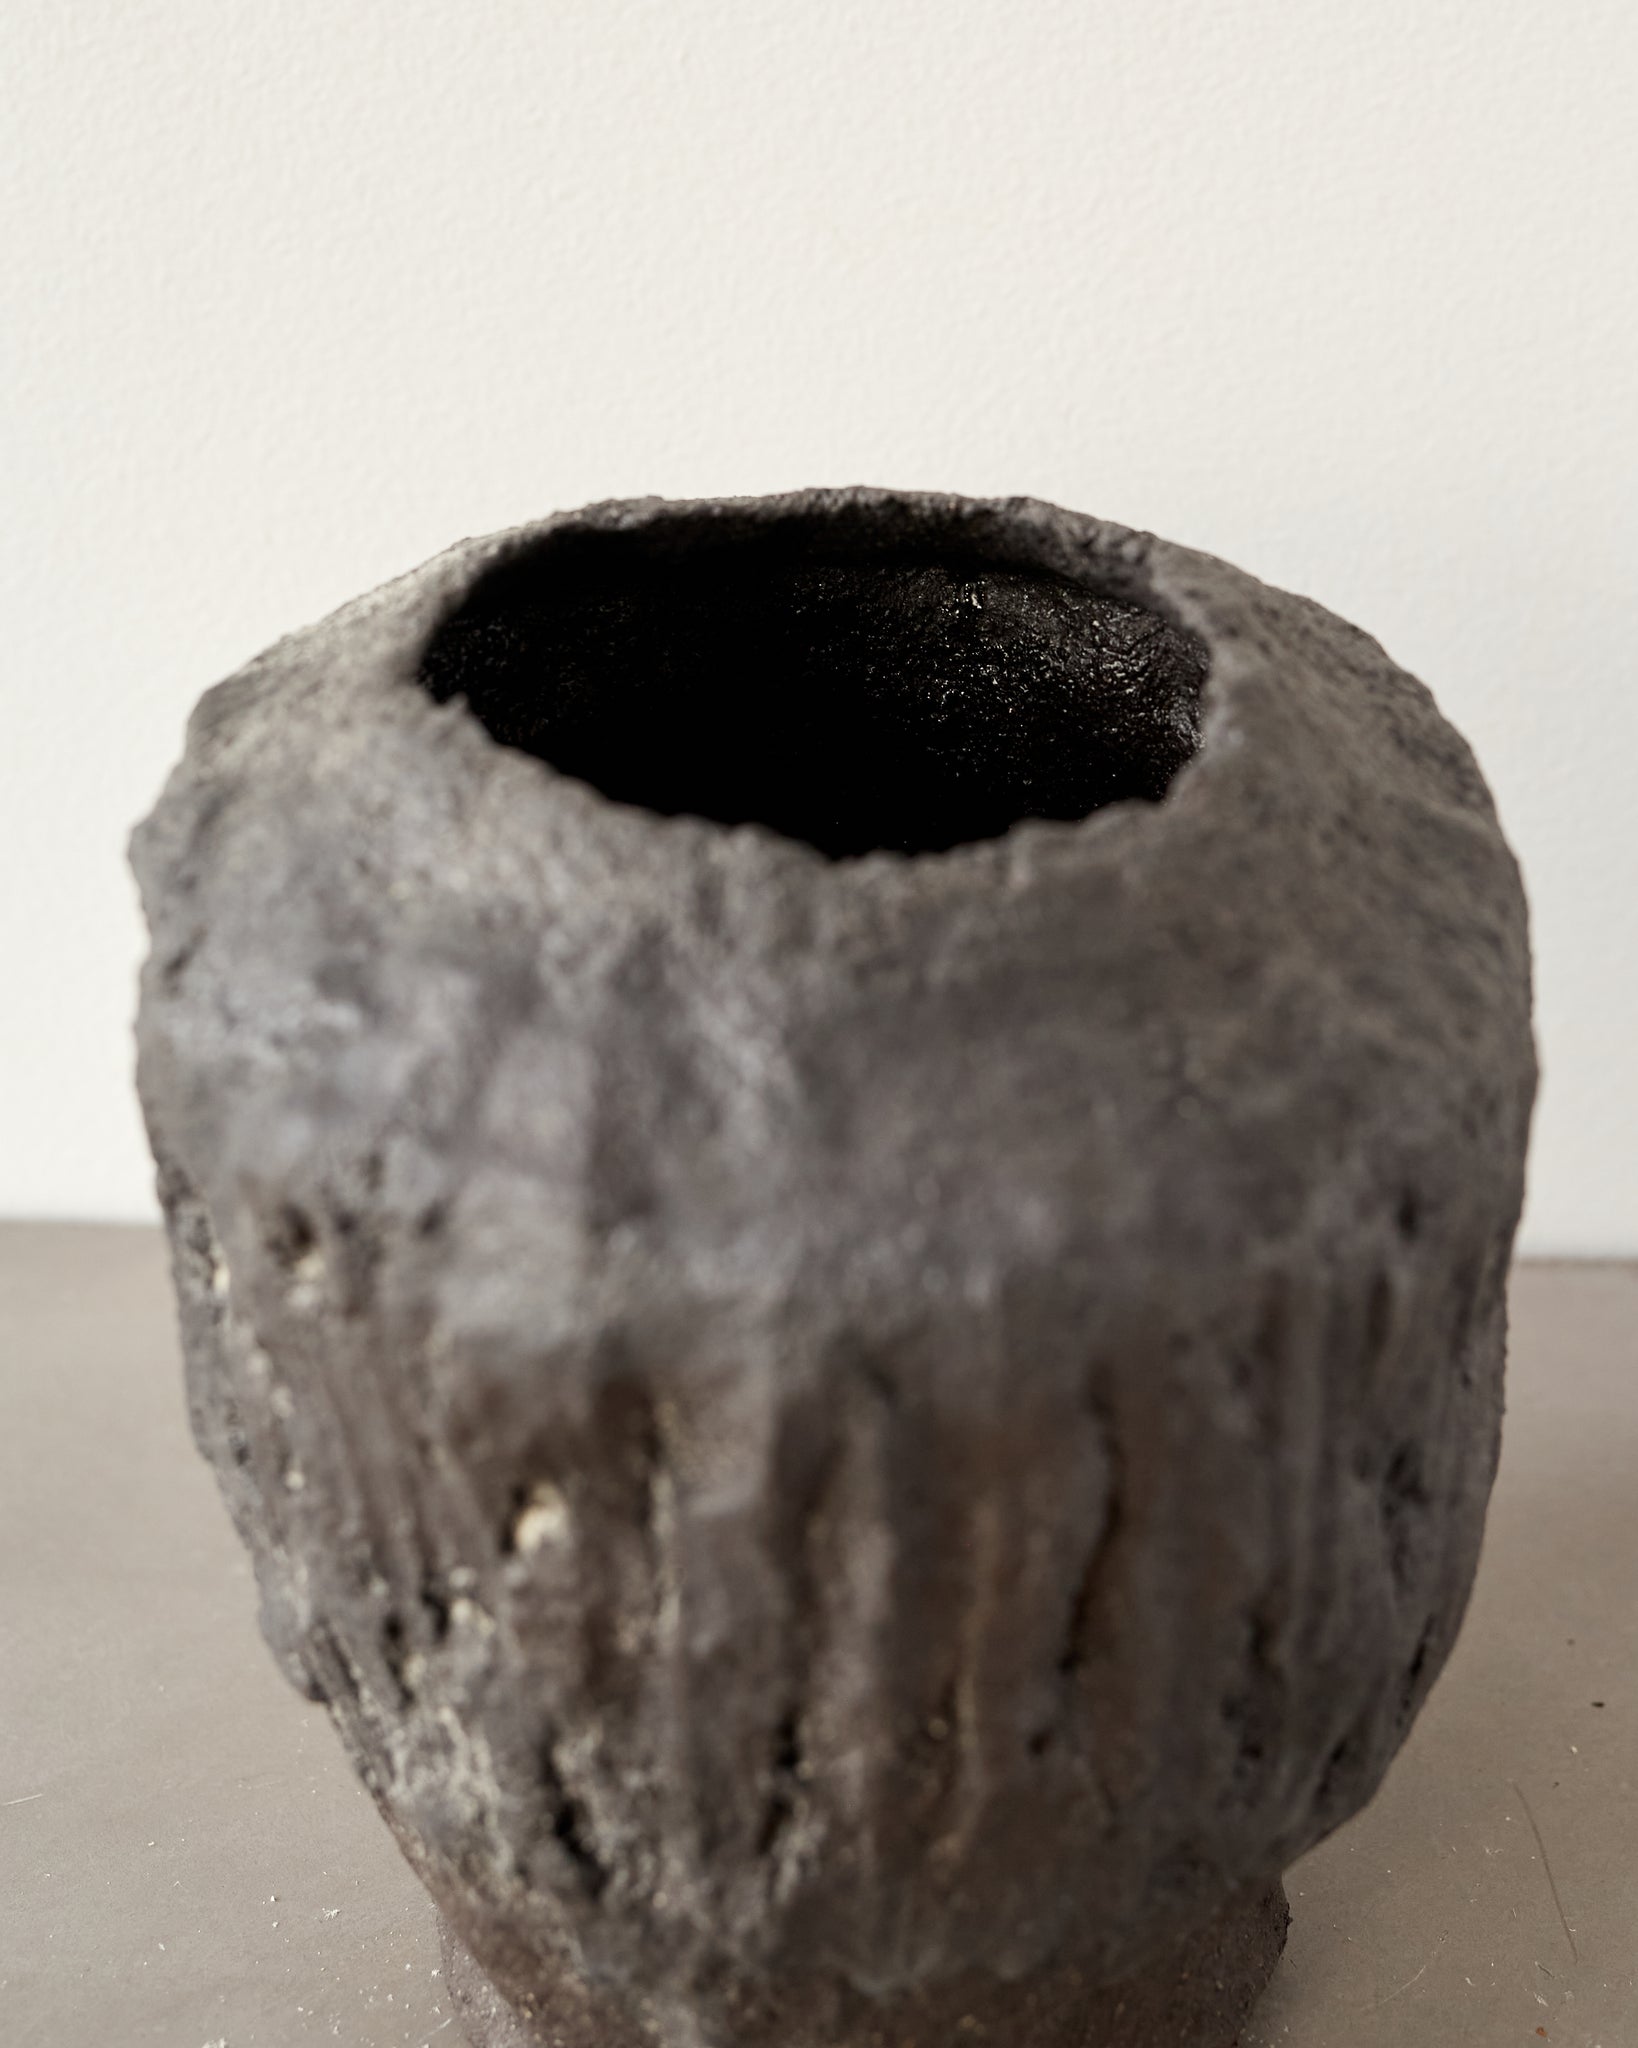 Jojo Corväiá Carved Ceramic Vase, V-1122